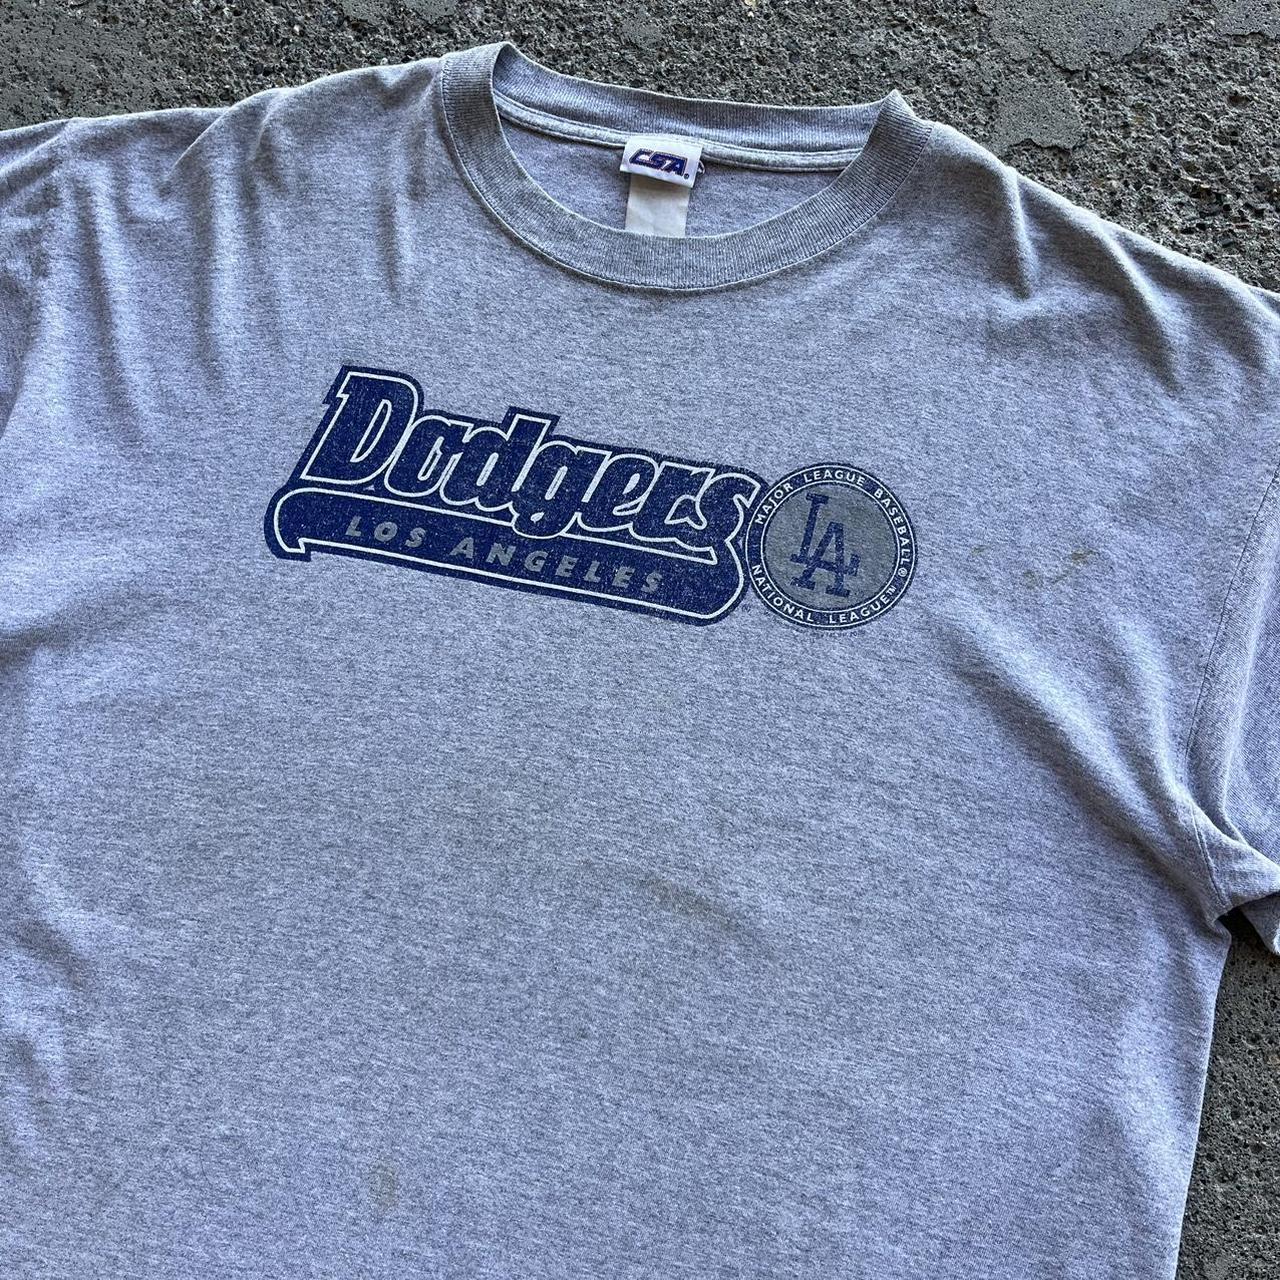 Vintage La dodgers shirt Size xl 22x31 Single - Depop